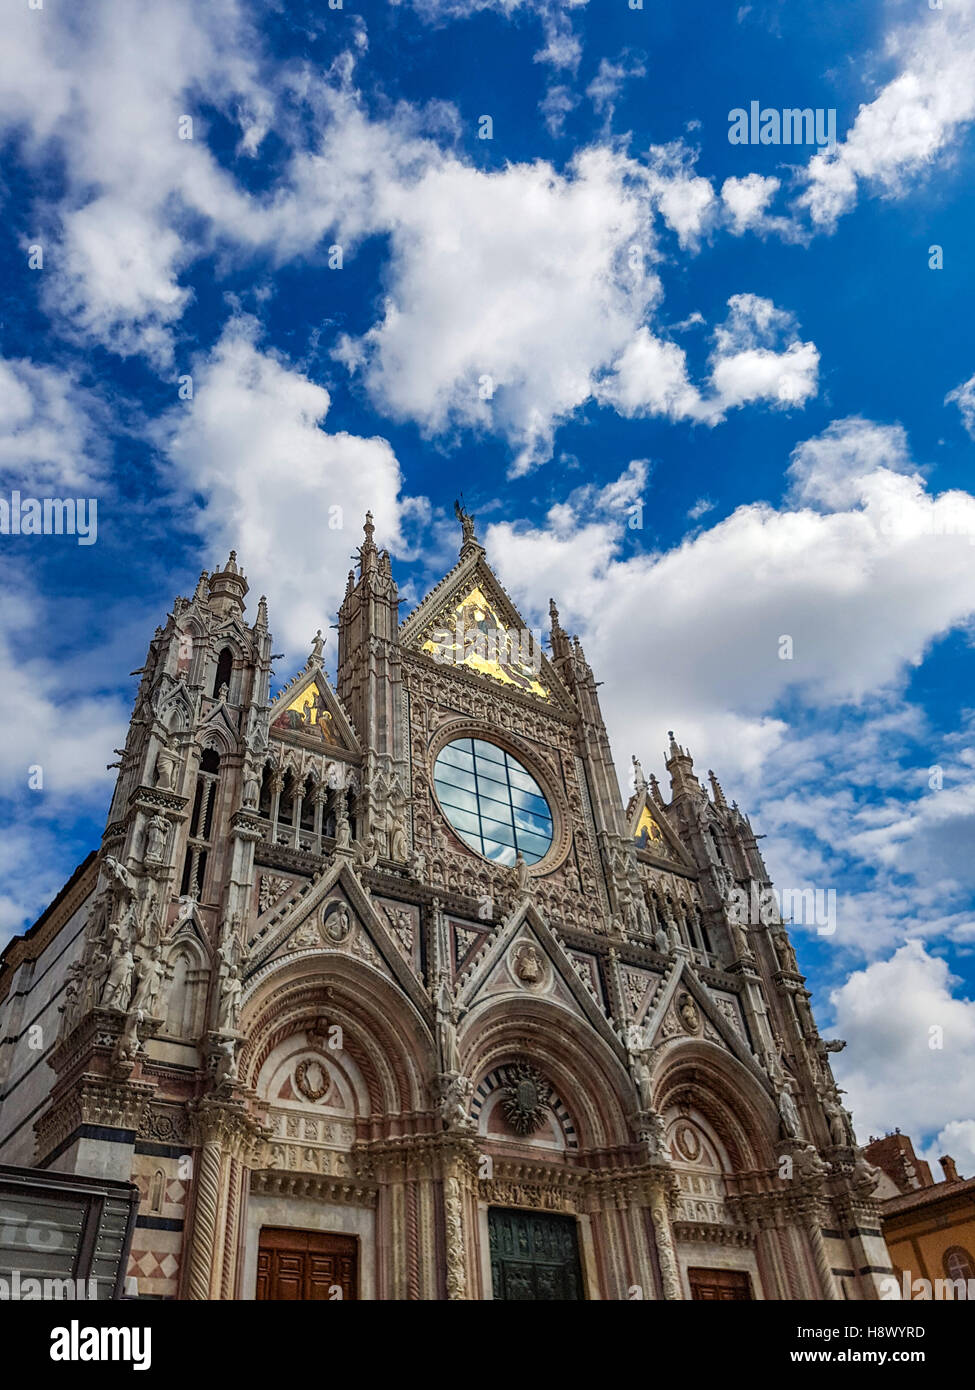 Exteriores y detalles arquitectónicos del Duomo, la catedral de Siena, Italia Foto de stock